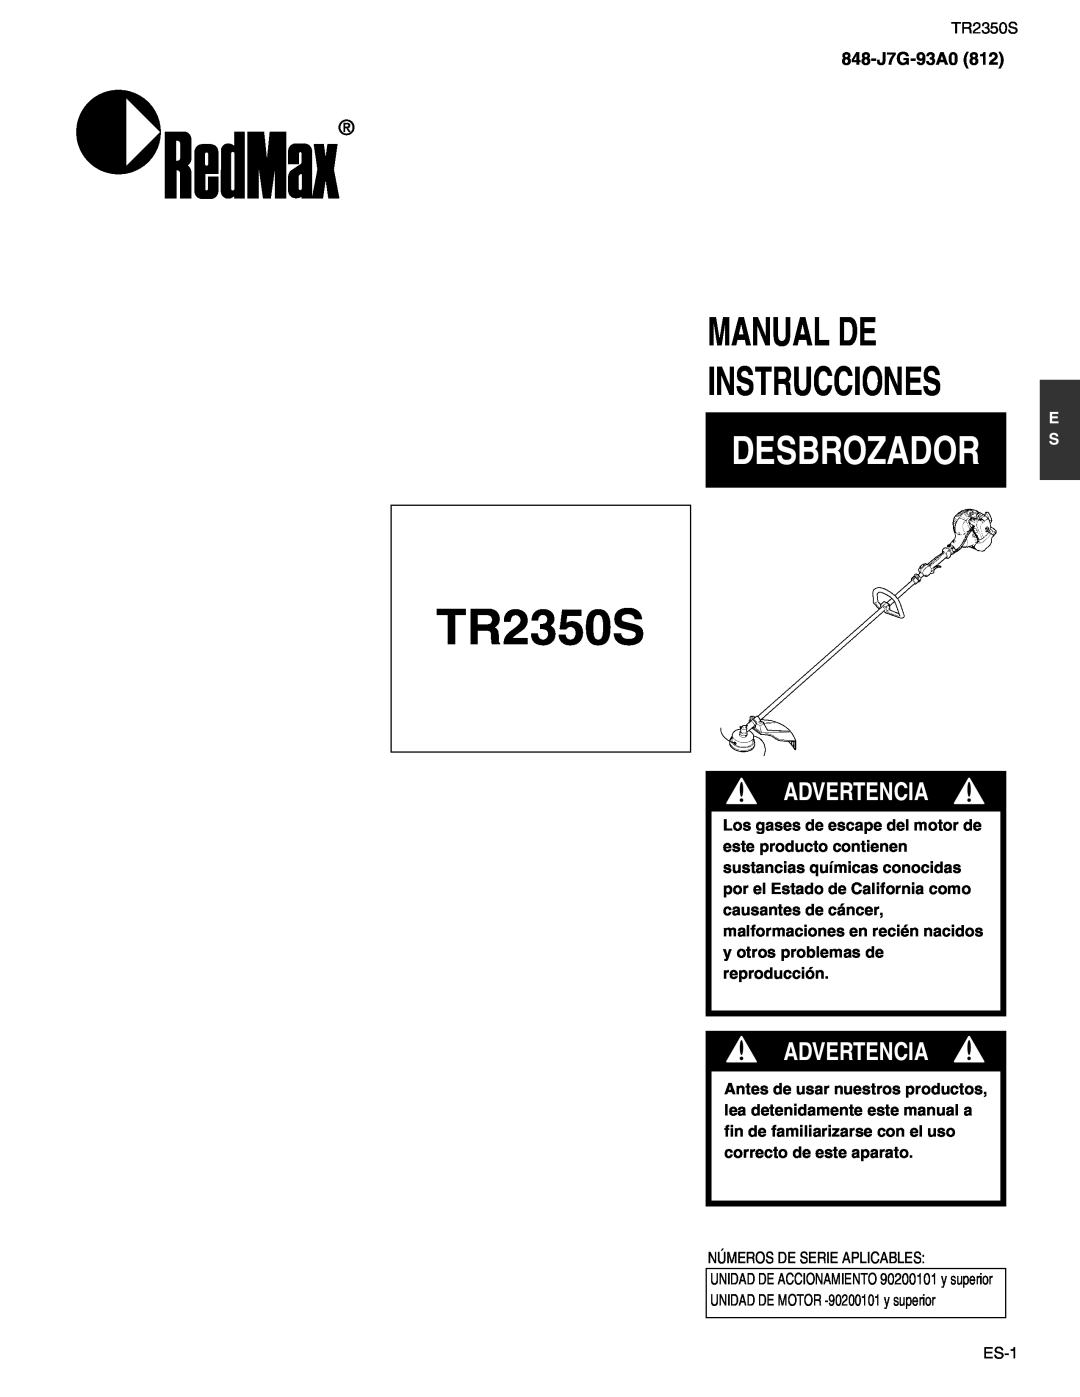 RedMax TR2350S manual Desbrozador, Manual De Instrucciones, Advertencia, 848-J7G-93A0812 